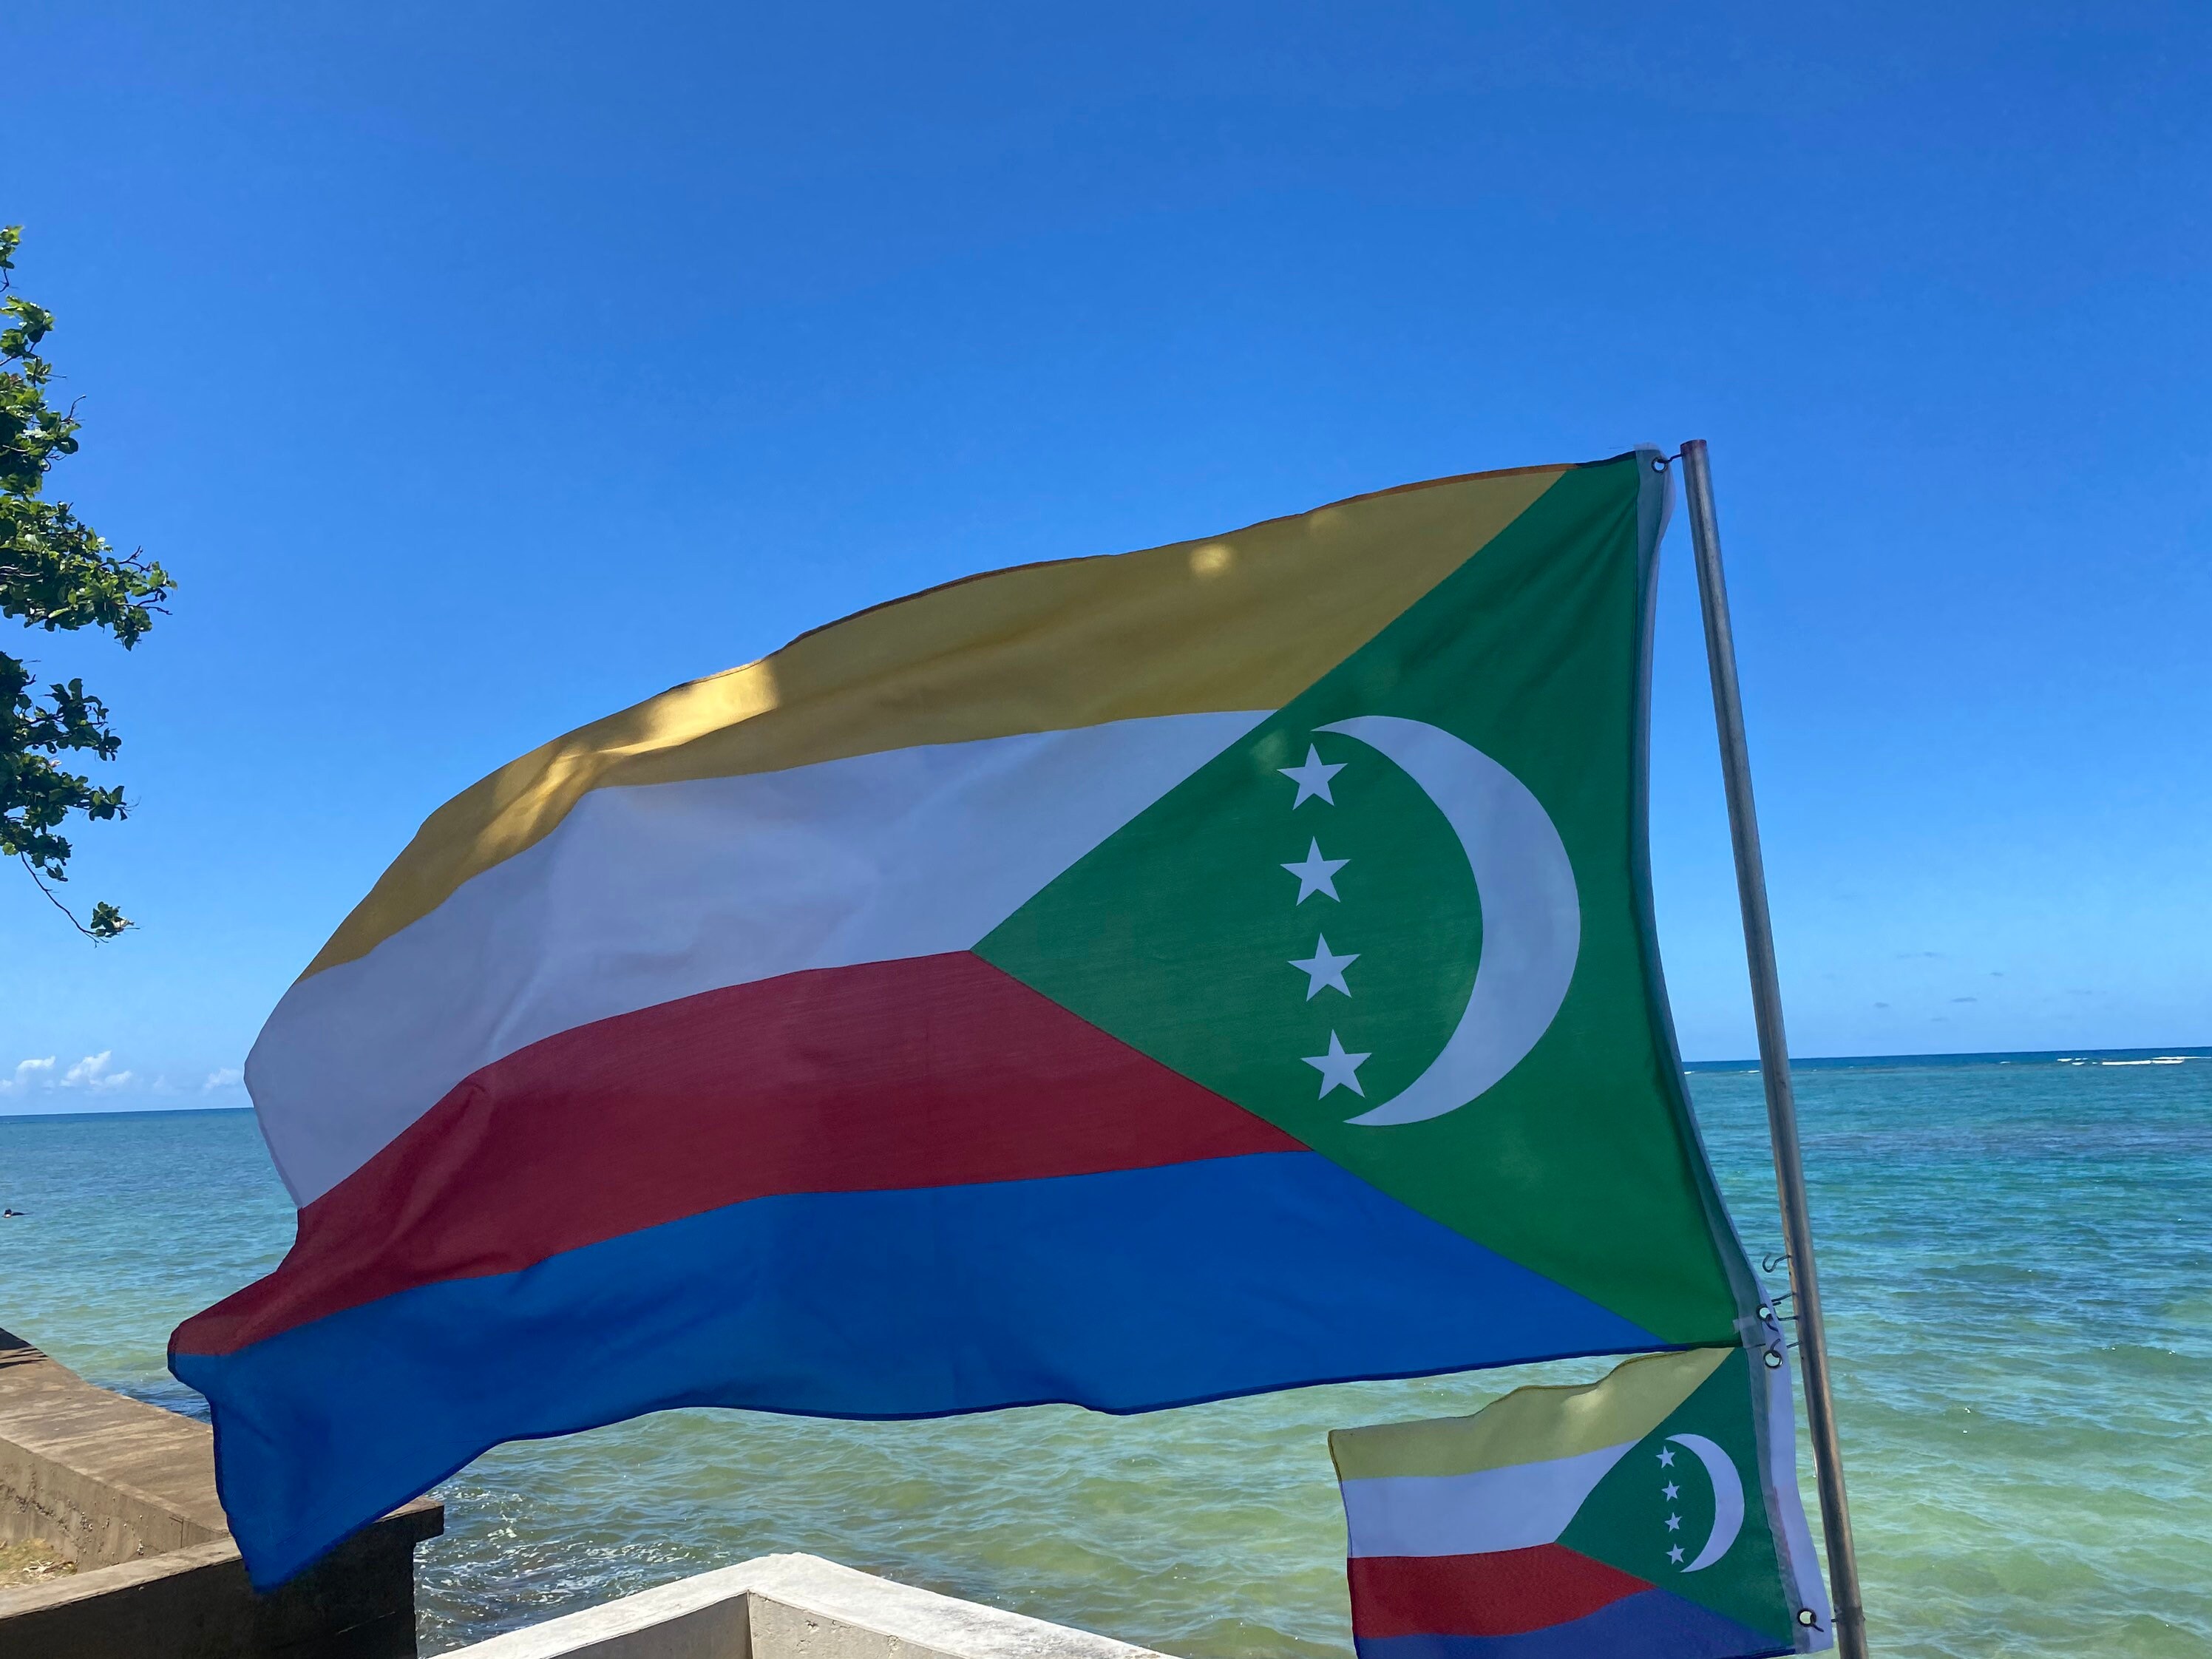 Drapeau Comores - Acheter drapeaux comoriens pas cher - Monsieur